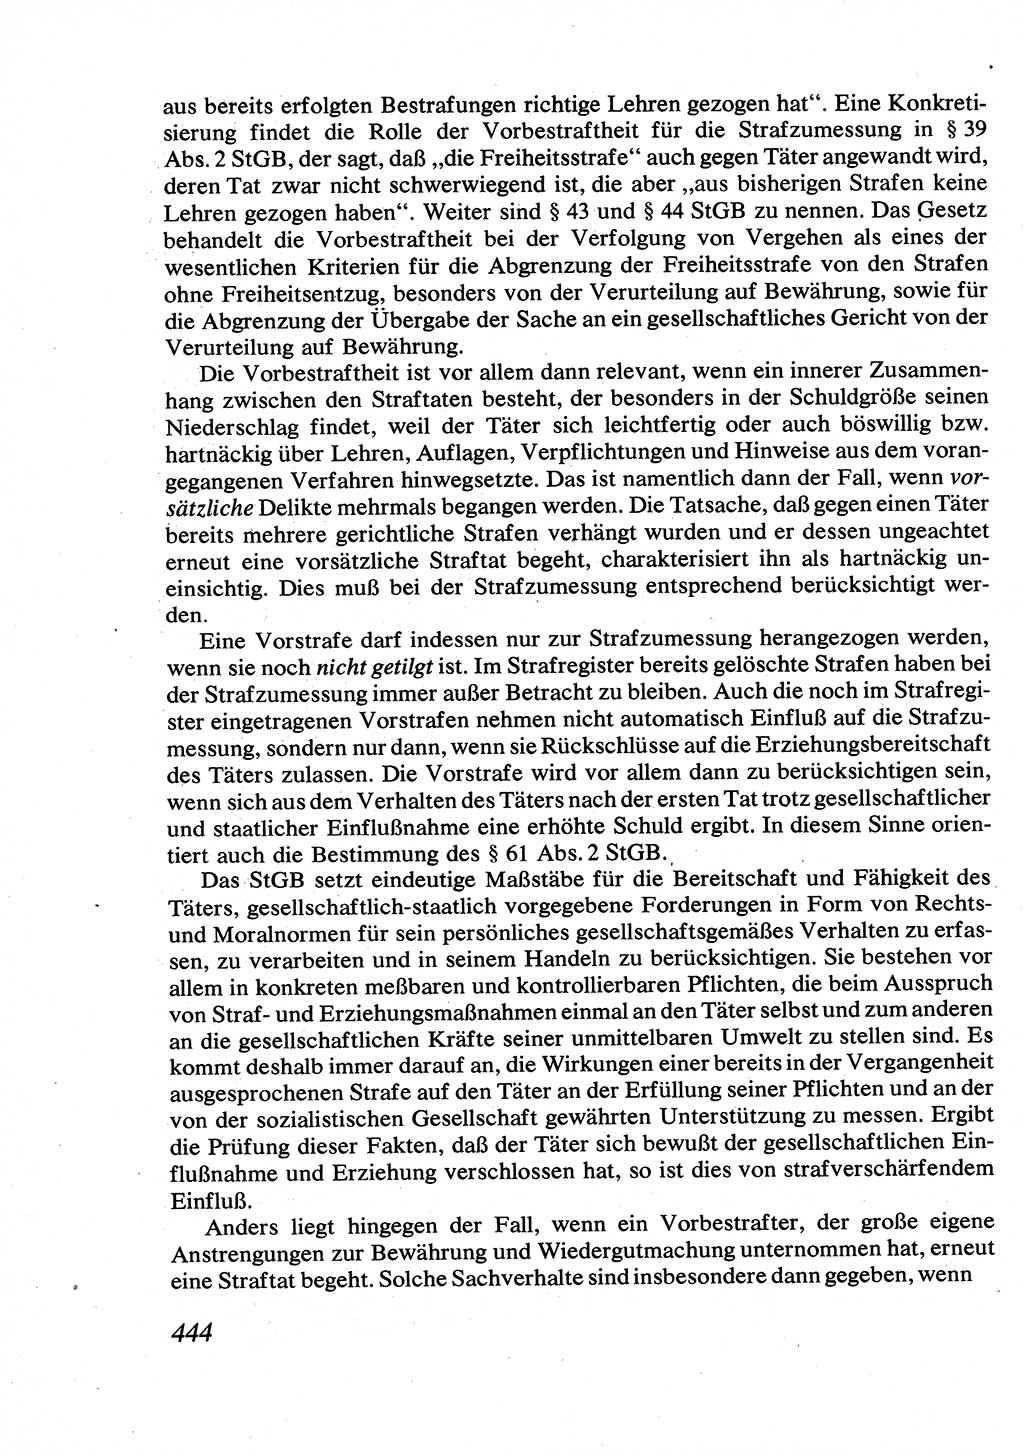 Strafrecht [Deutsche Demokratische Republik (DDR)], Allgemeiner Teil, Lehrbuch 1976, Seite 444 (Strafr. DDR AT Lb. 1976, S. 444)